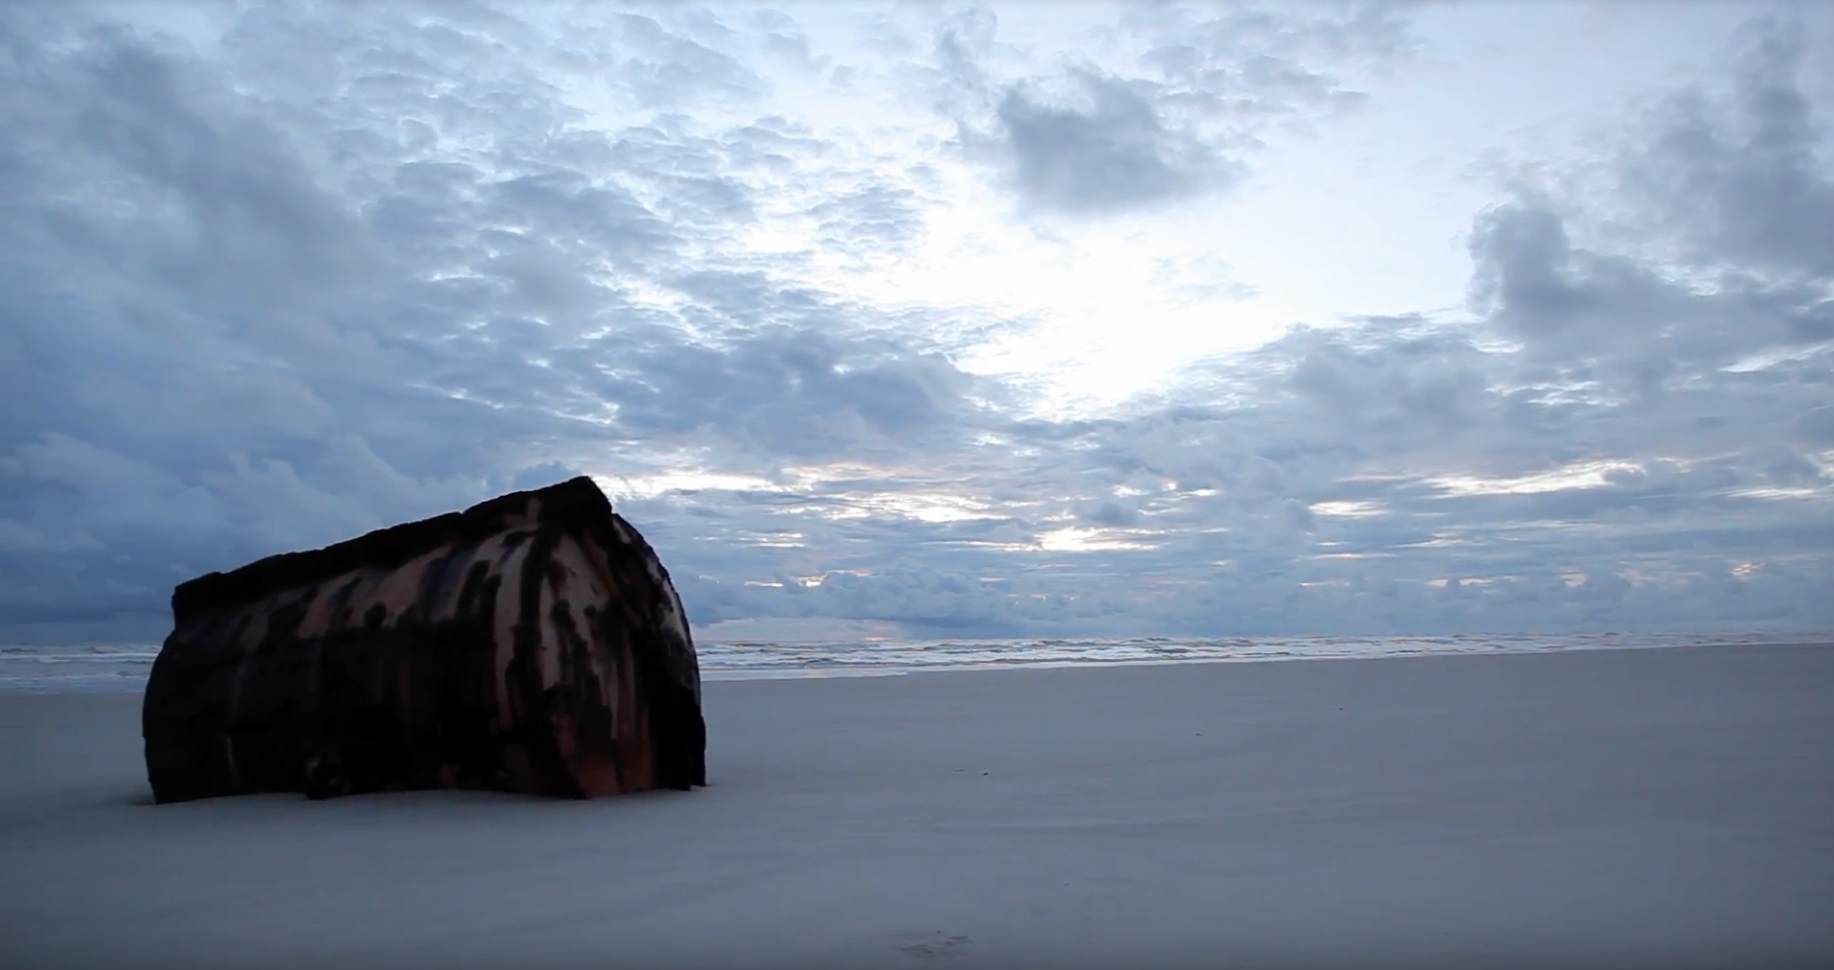 A big boulder sitting on a beach